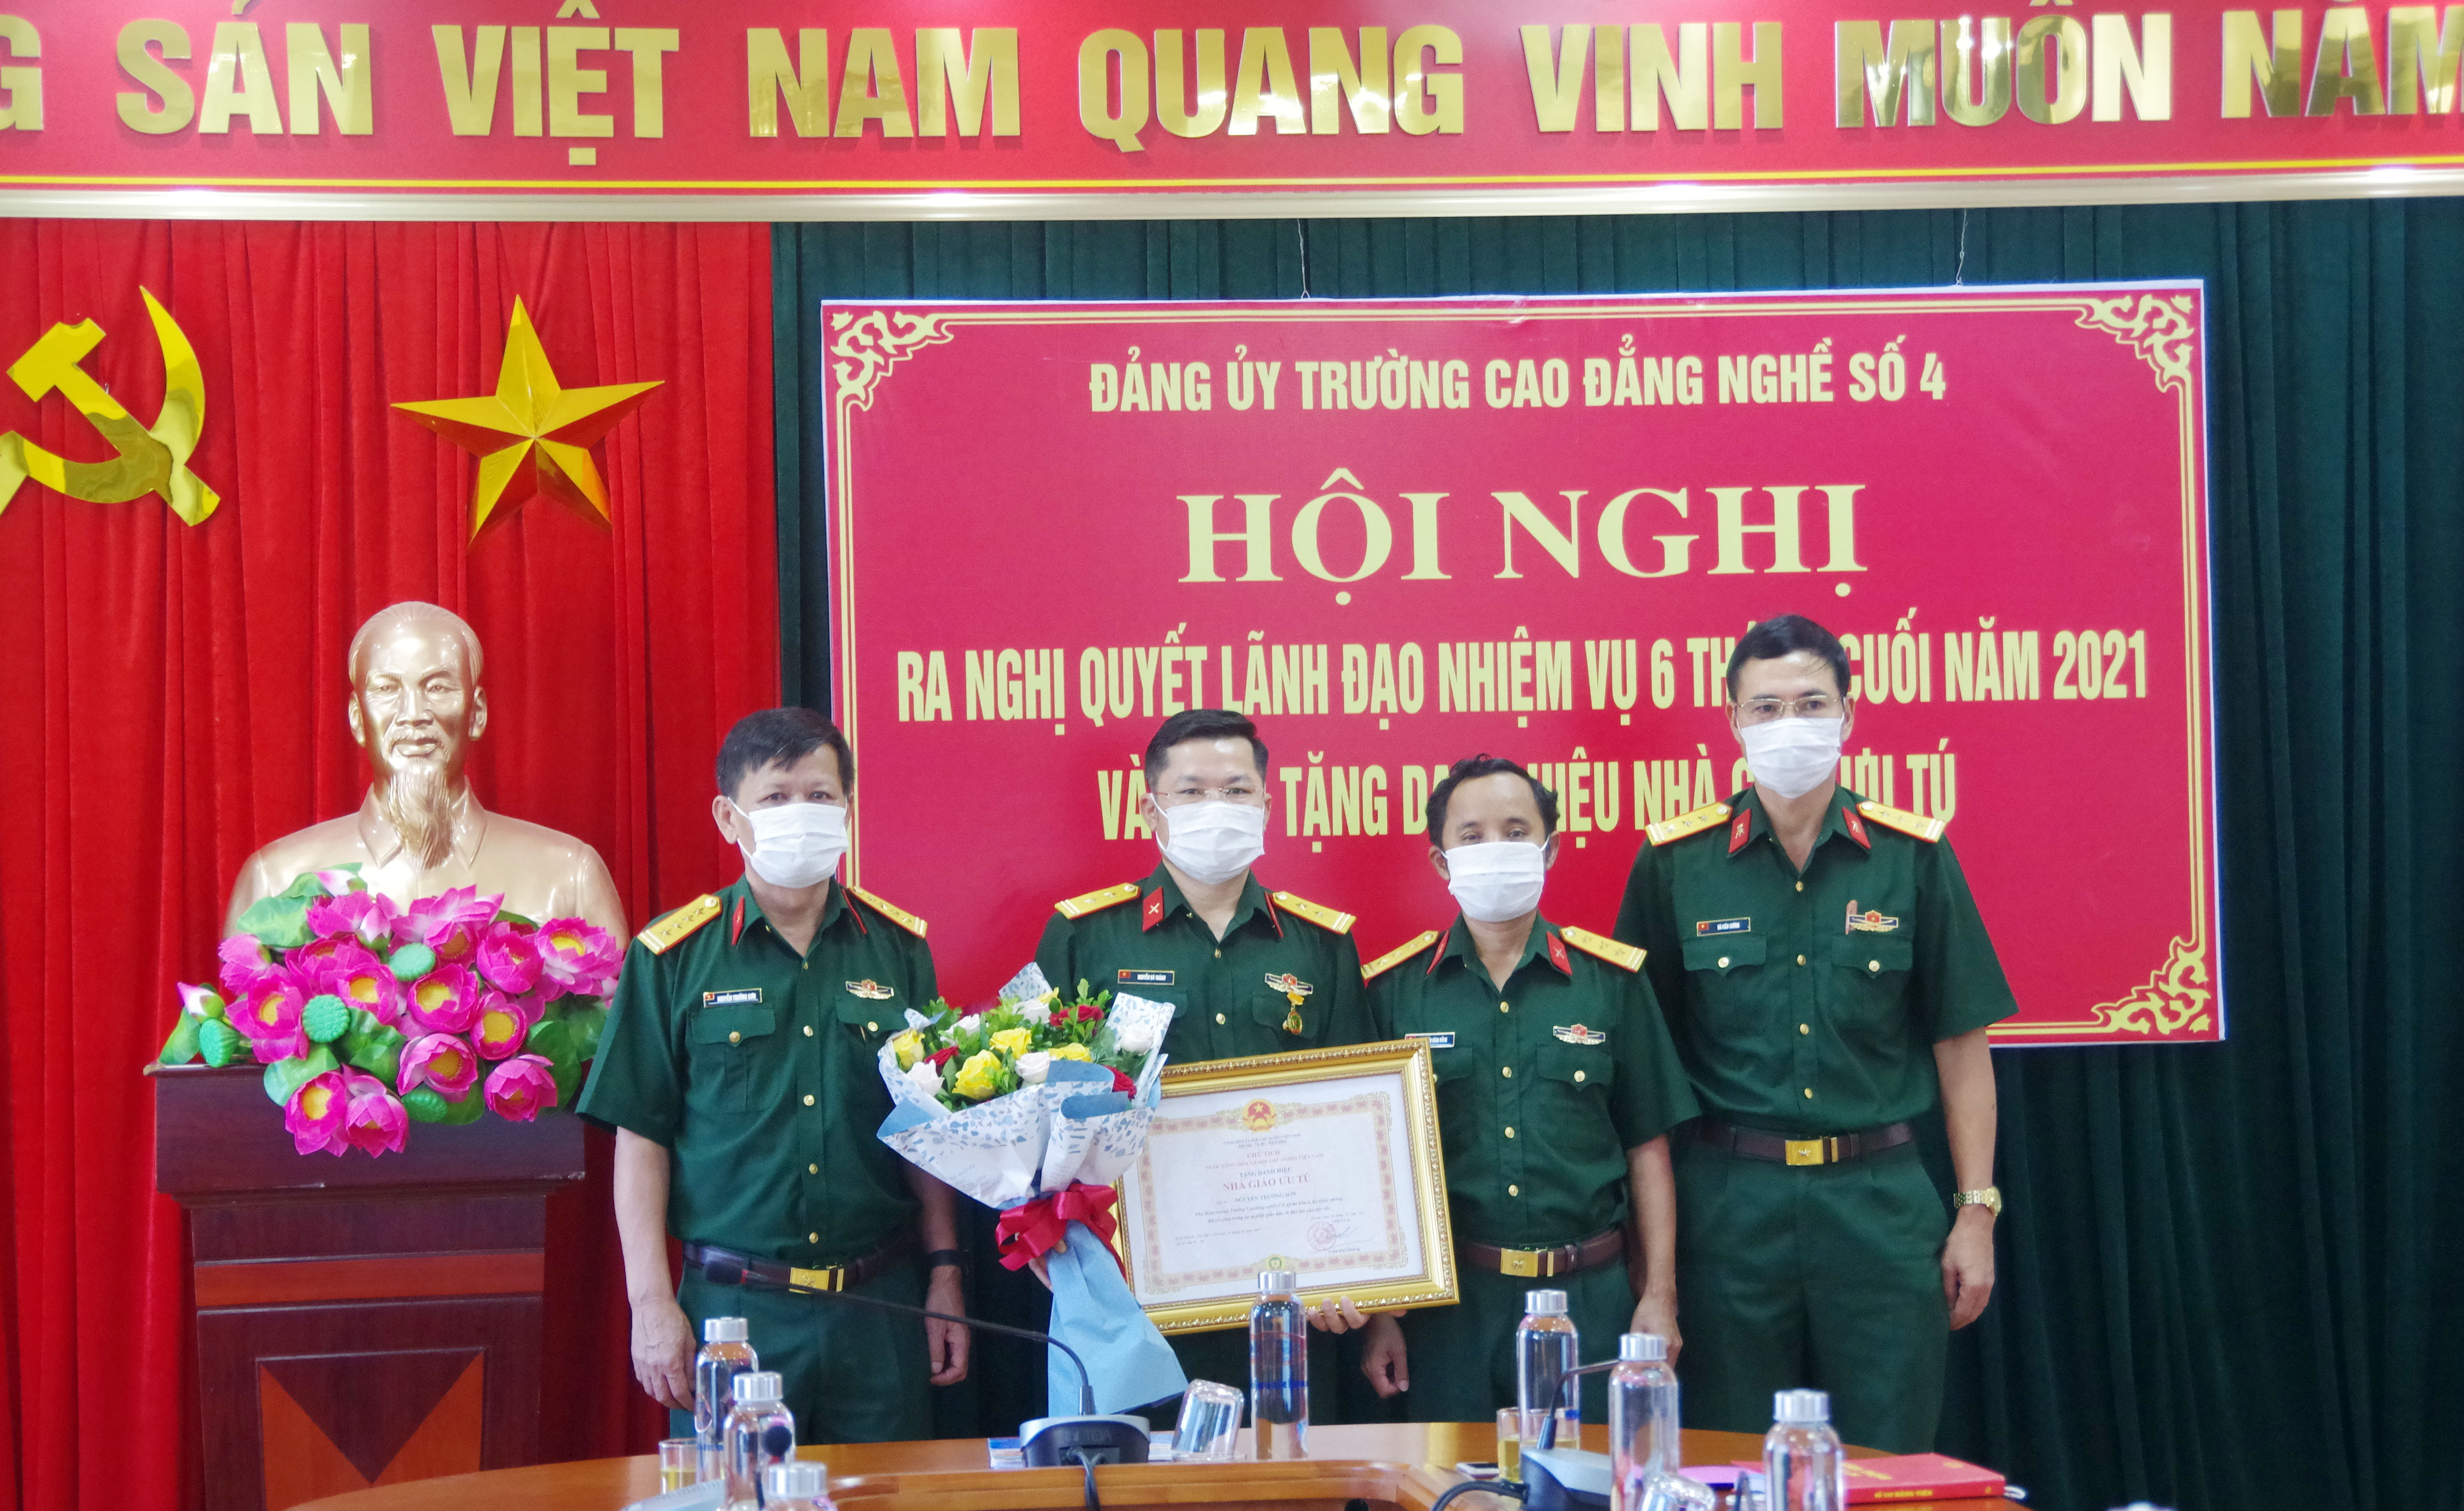 Ban giám hiệu Trường Cao đẳng nghề số 4 - Bộ Quốc phòng trao tặng danh hiệu Nhà giáo ưu tú cho Trung tá Nguyễn Bá Thành. Ảnh: Nguyễn Tình.